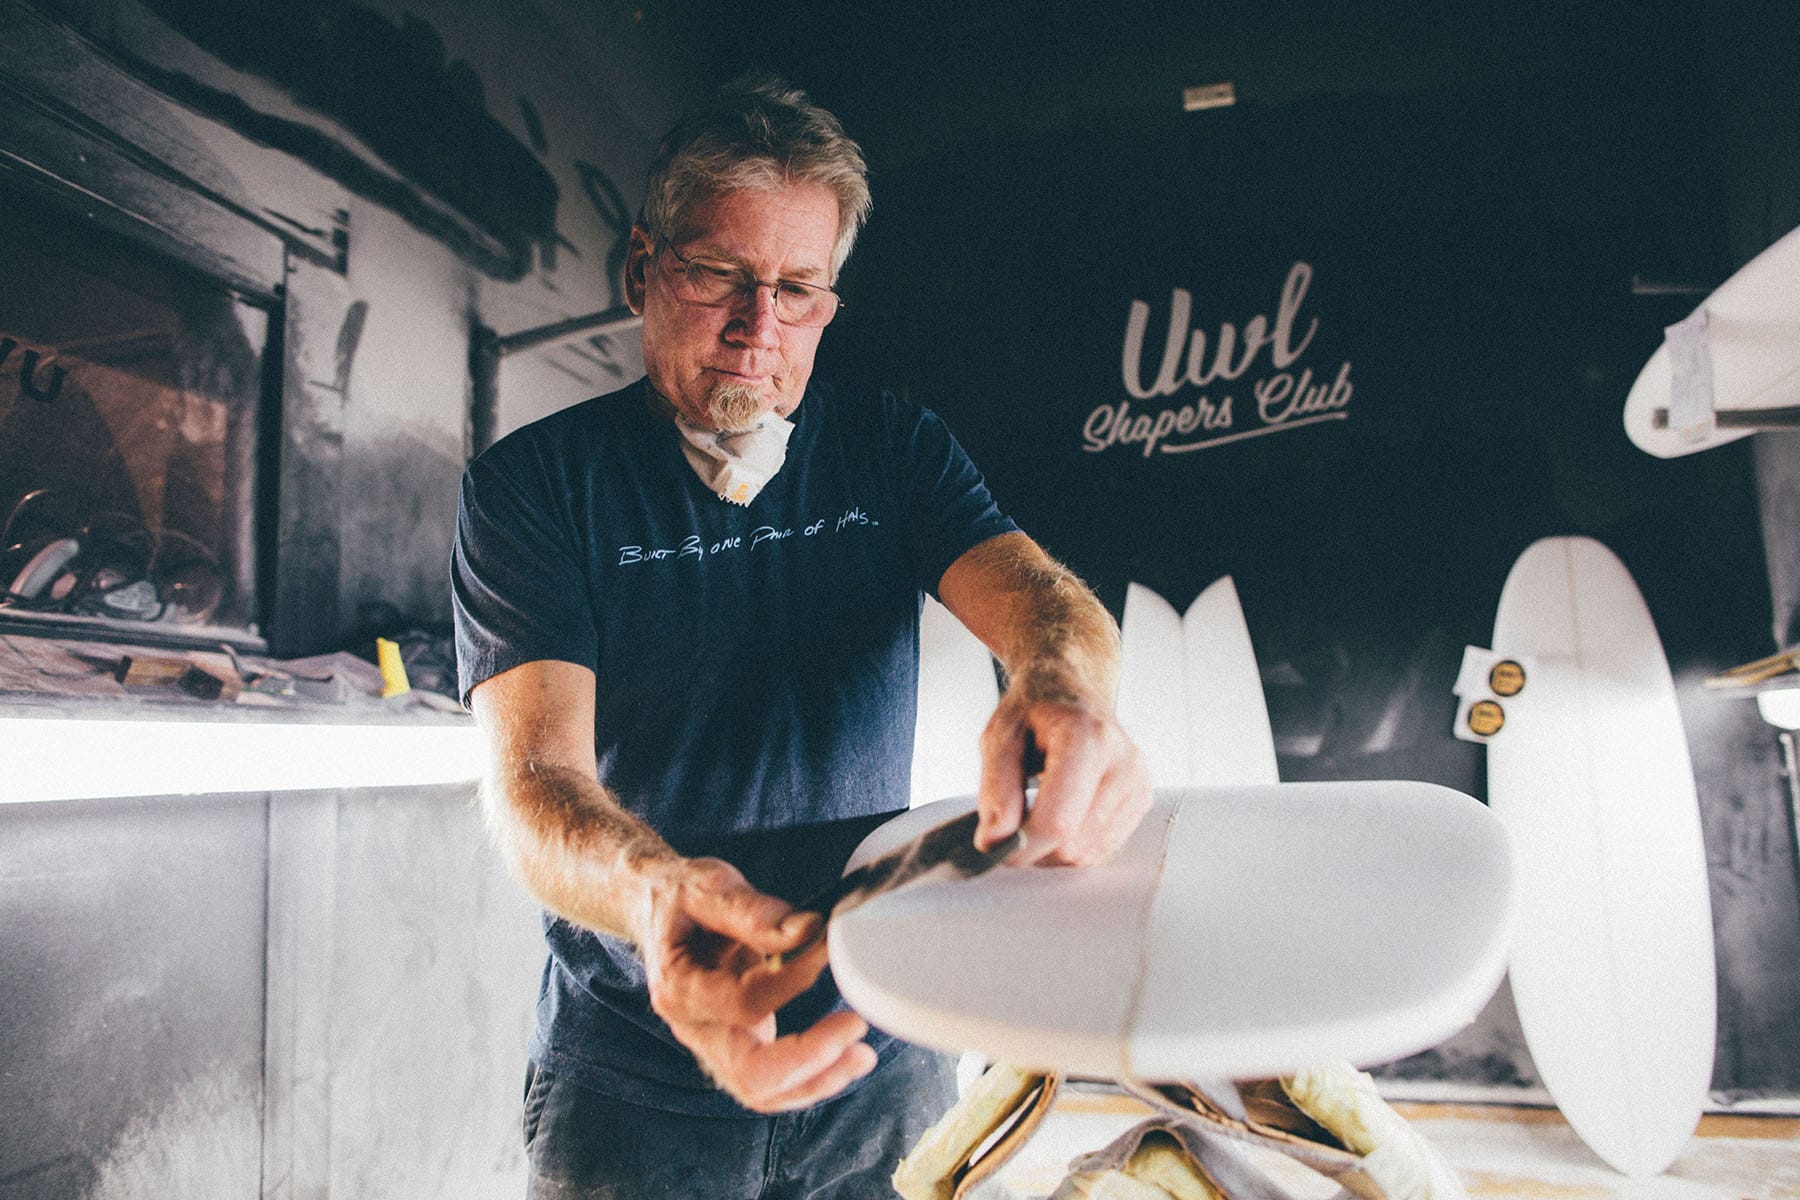 Shapers-Club- Roger Hinds façonne des planches de surf dans un atelier. -surfshop-surfboard